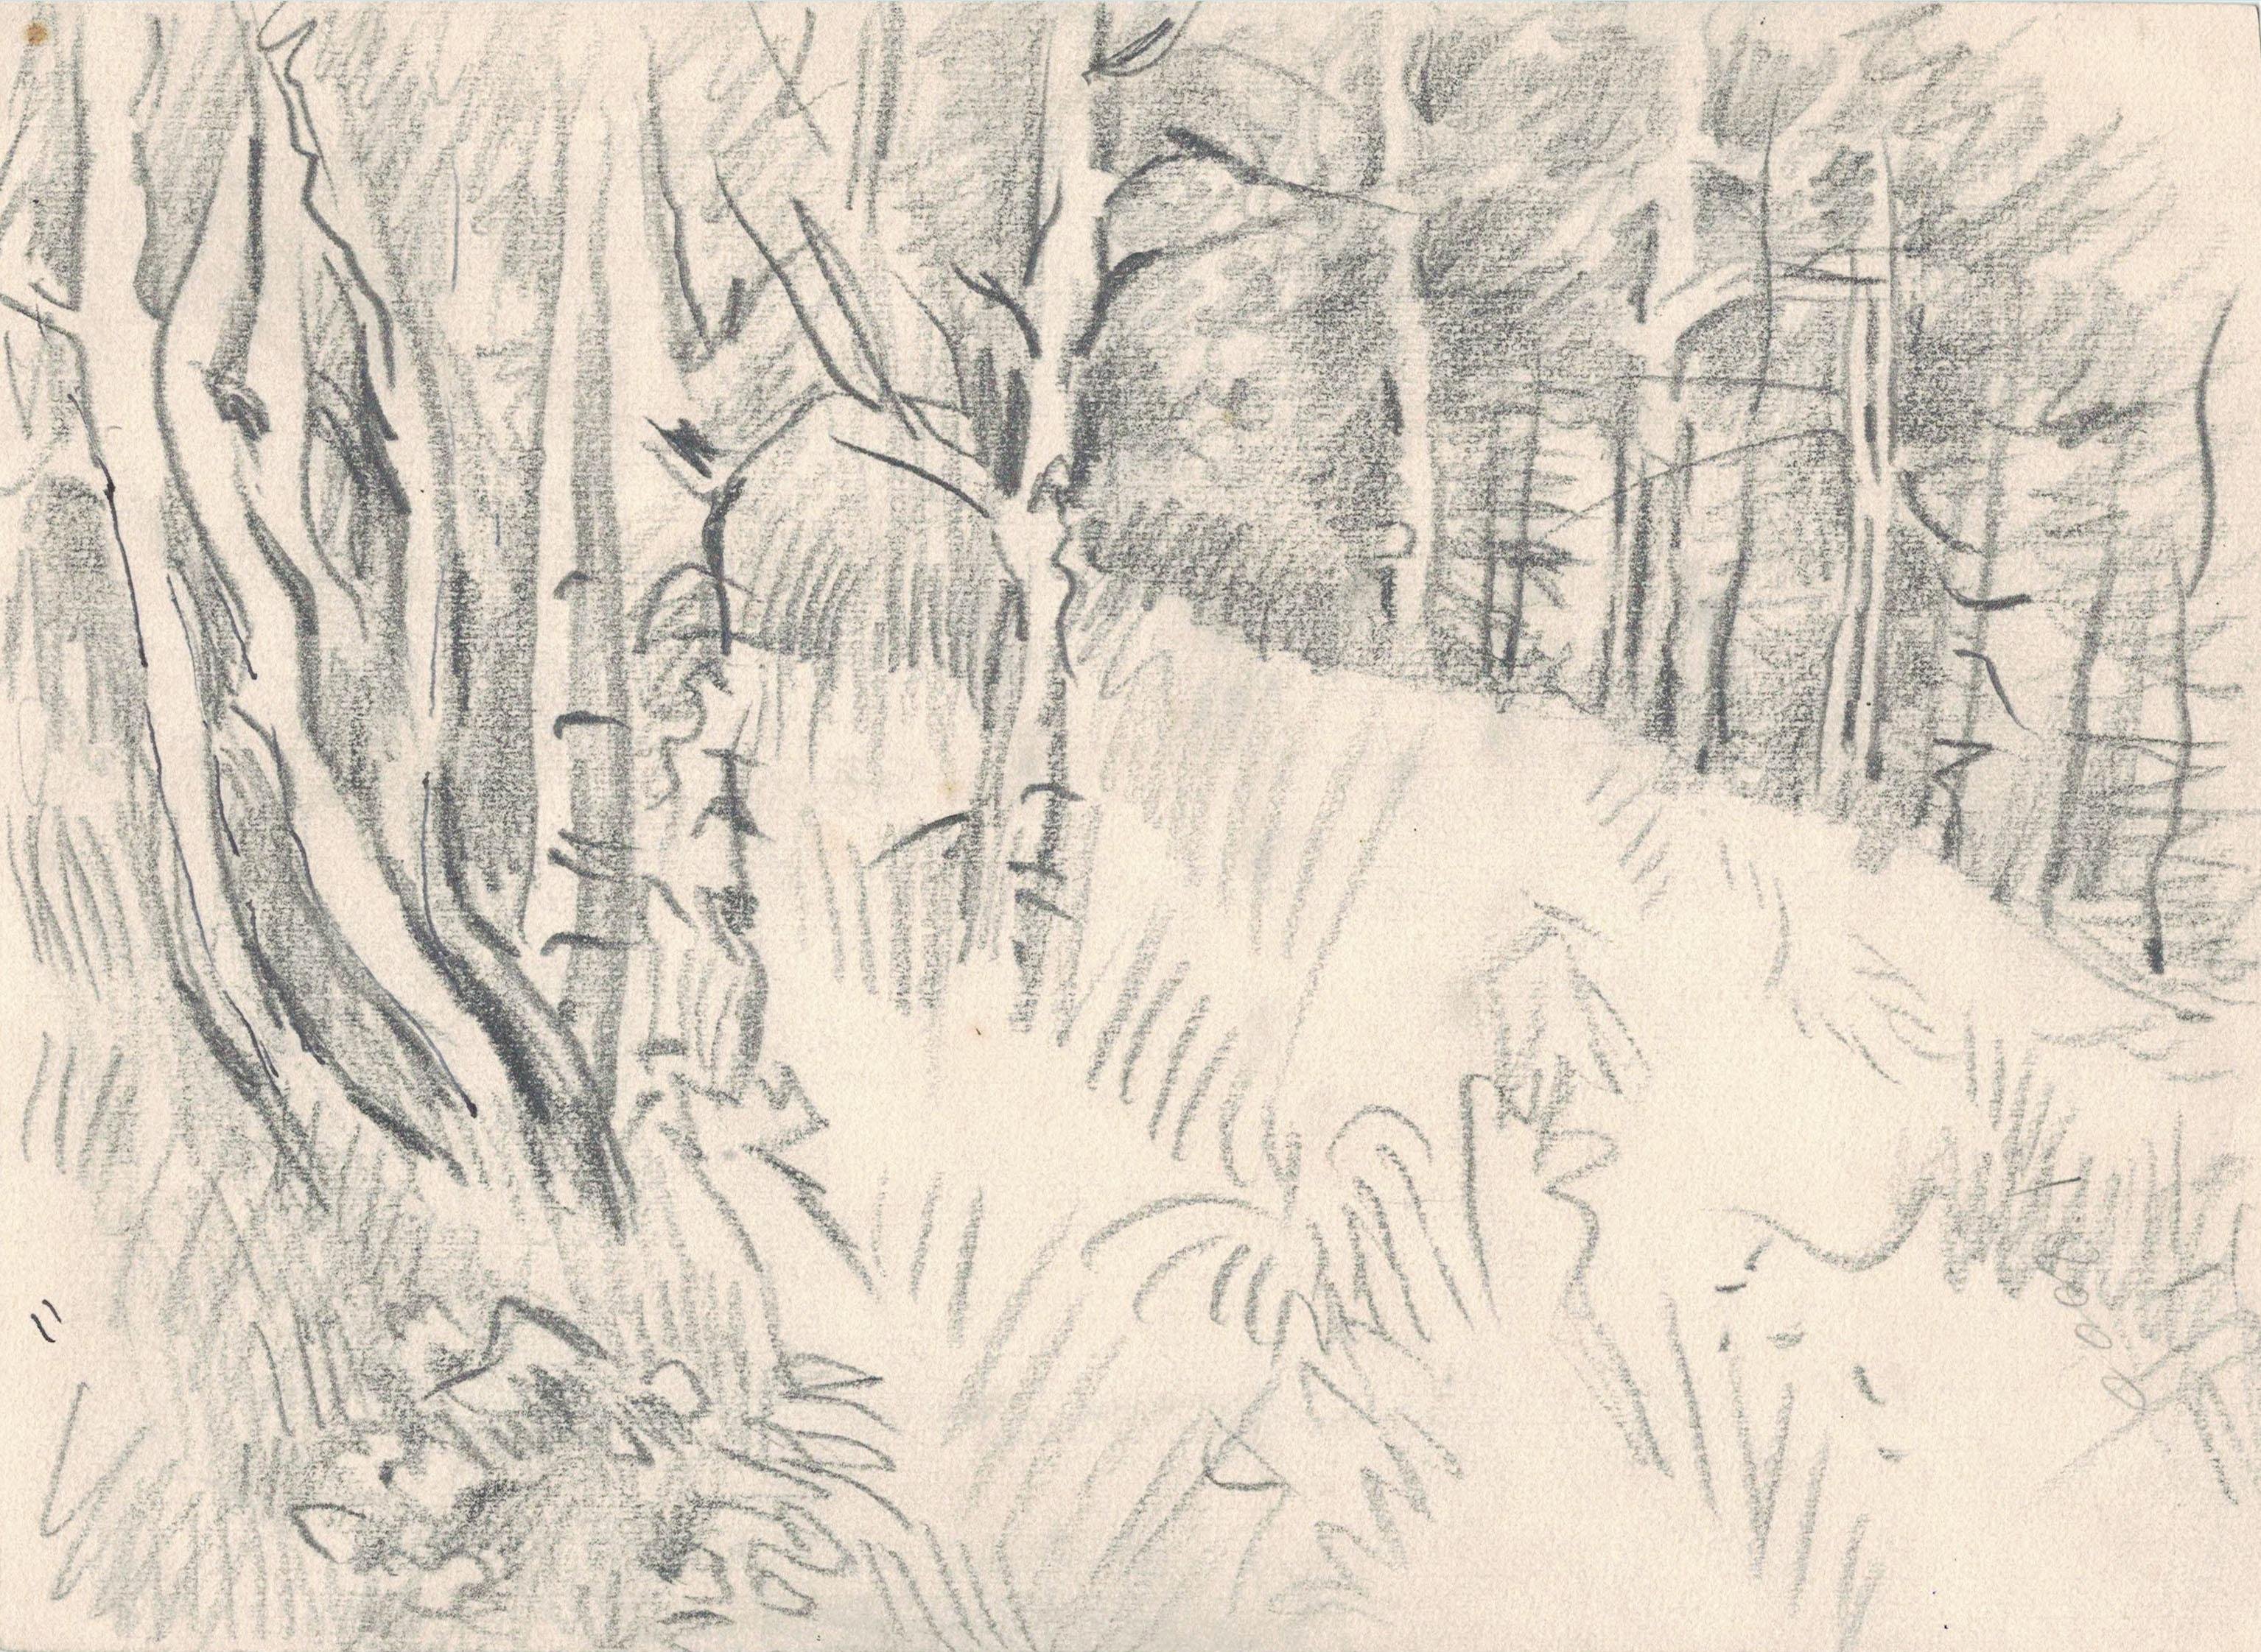 Первый эпизод васюткино озеро. Зарисовки карандашом иллюстрации Васюткино озеро. Васюткино озеро рисунок карандашом. Рисунок к произведению Васюткино озеро. Рисунок Васюткино озеро раскраска.